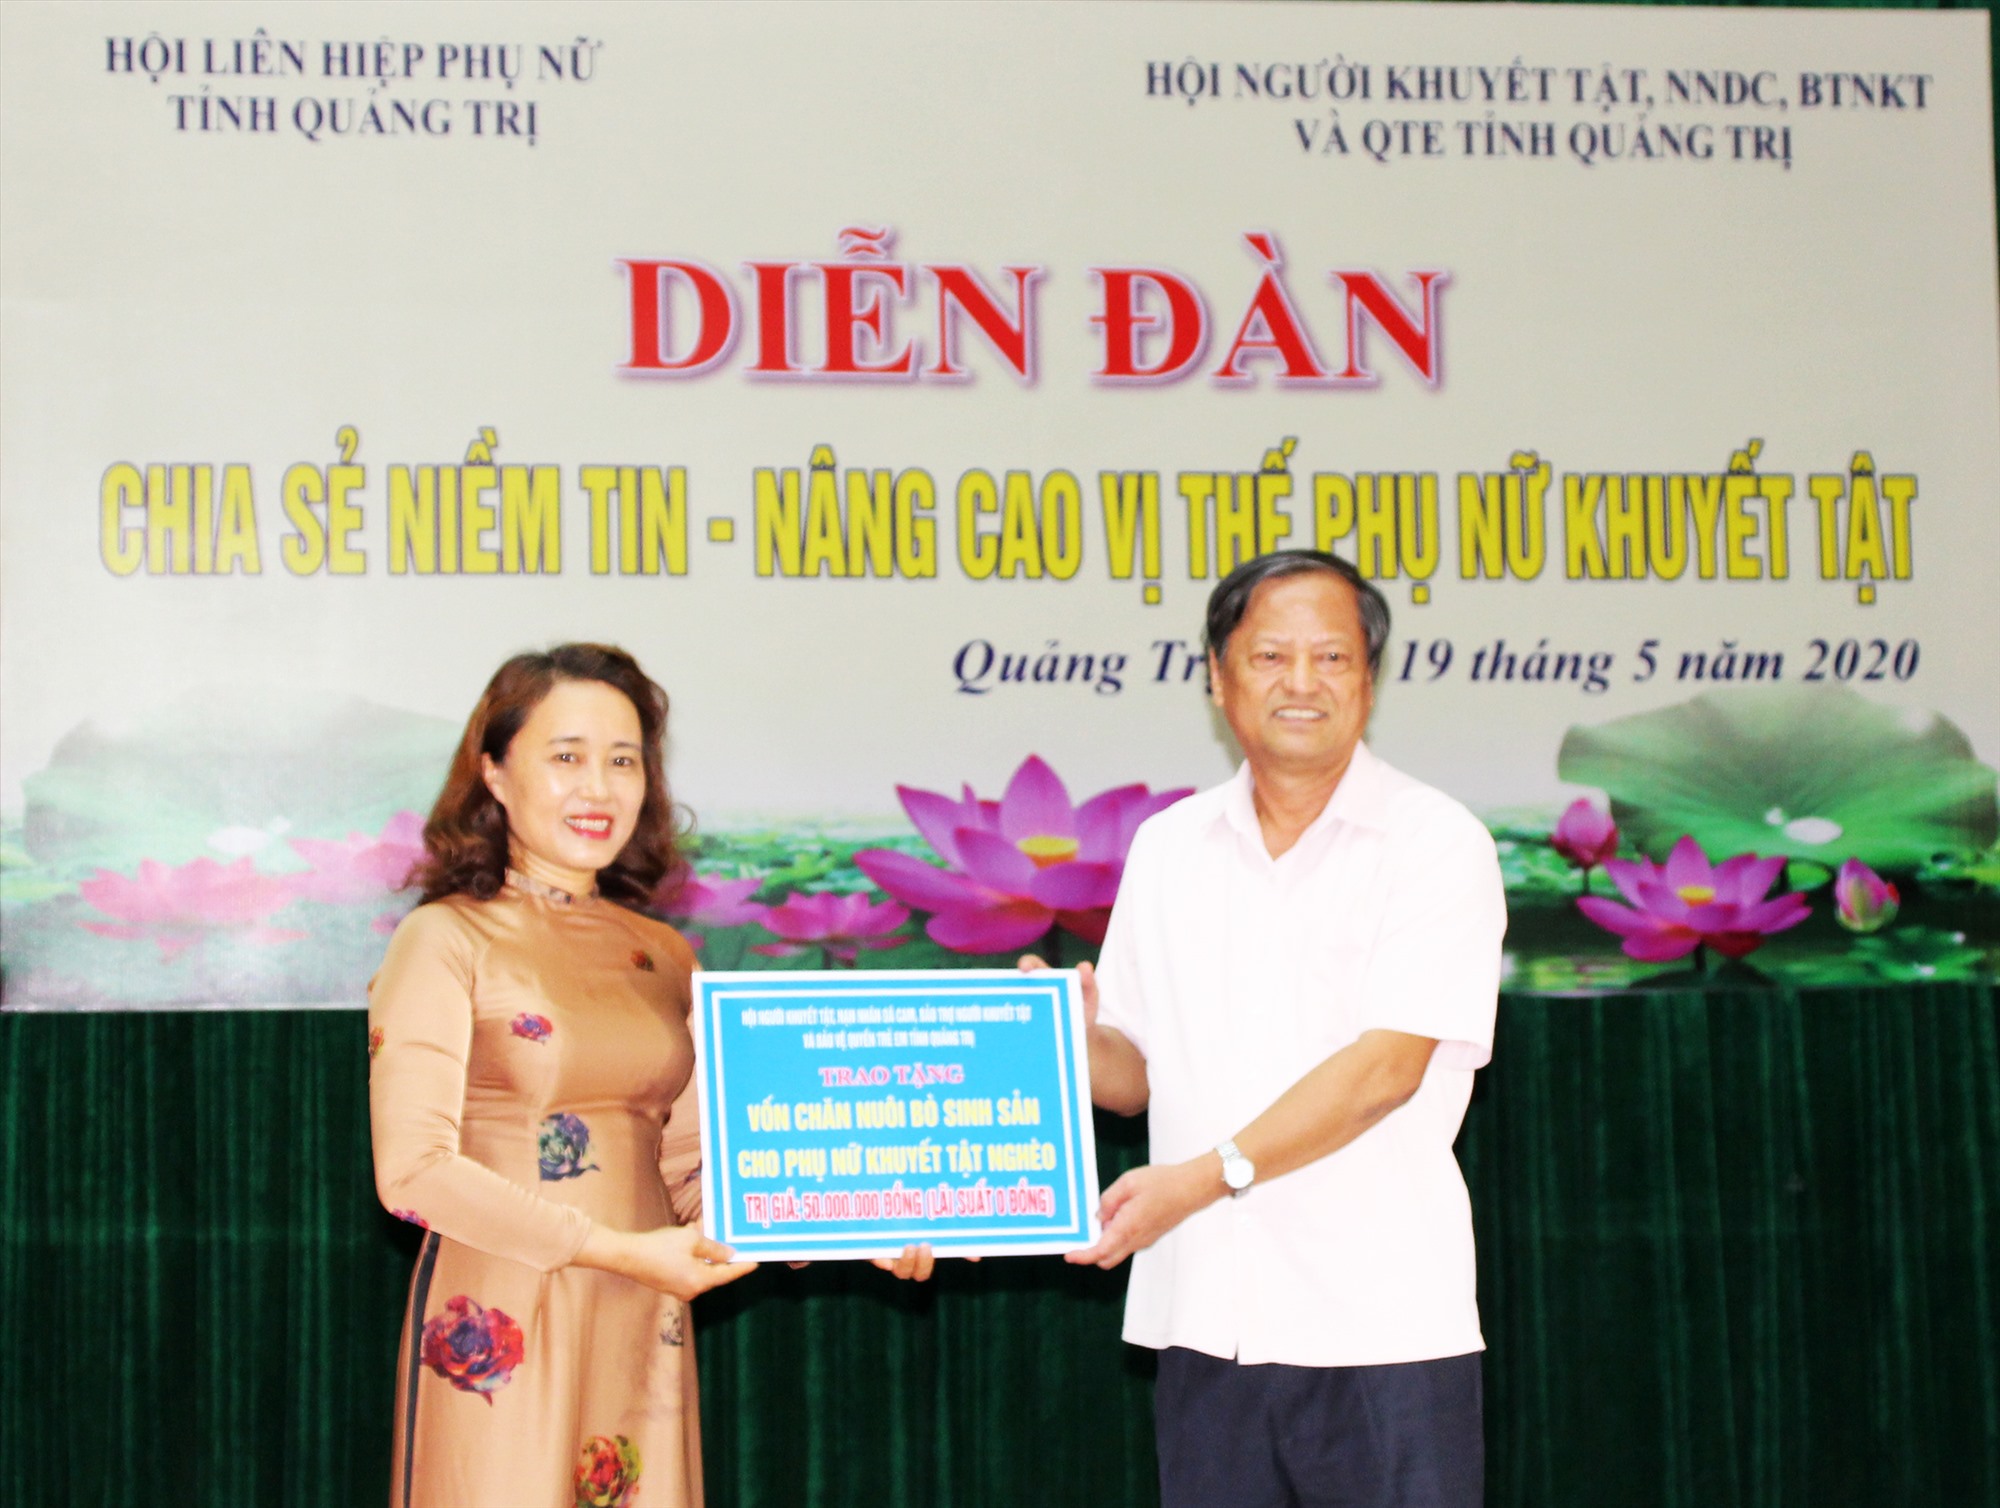 Chủ tịch Hội LHPN tỉnh tiếp nhận 50 triệu đồng vốn từ Hội NKT,NNDC, BTNKT&QTE tỉnh Quảng Trị để hỗ trợ chăn nuôi bò sinh sản cho PNKT-Ảnh: T.L